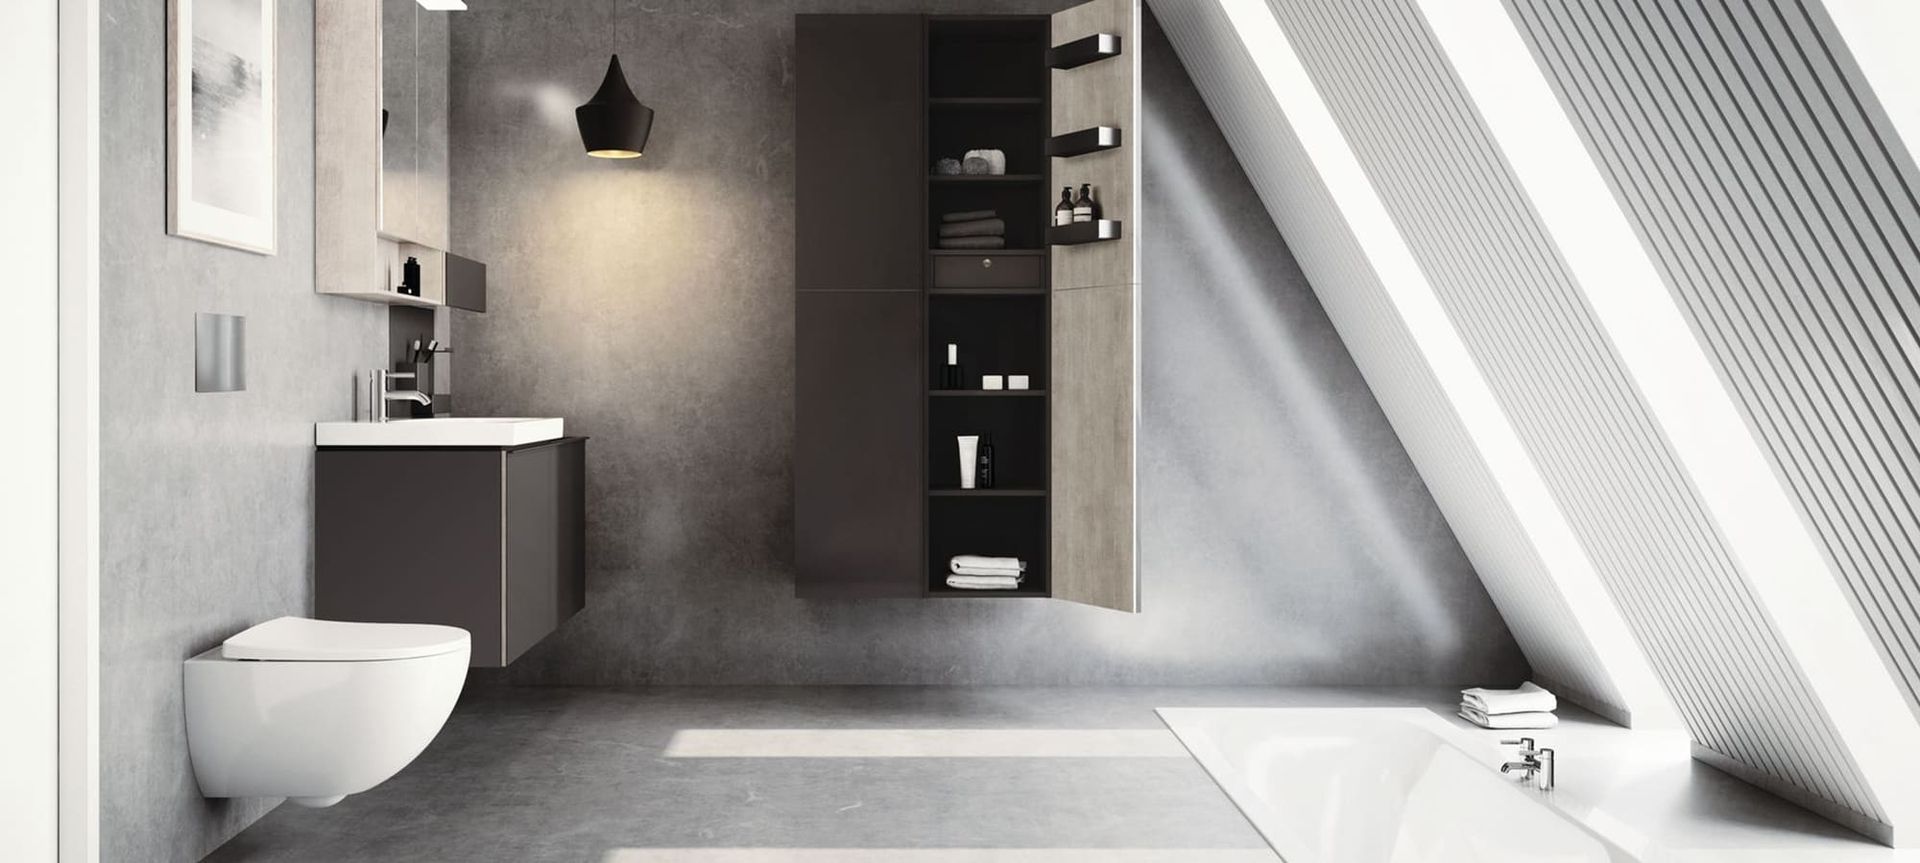 Bild eines Badezimmers mit grauen Fliesen